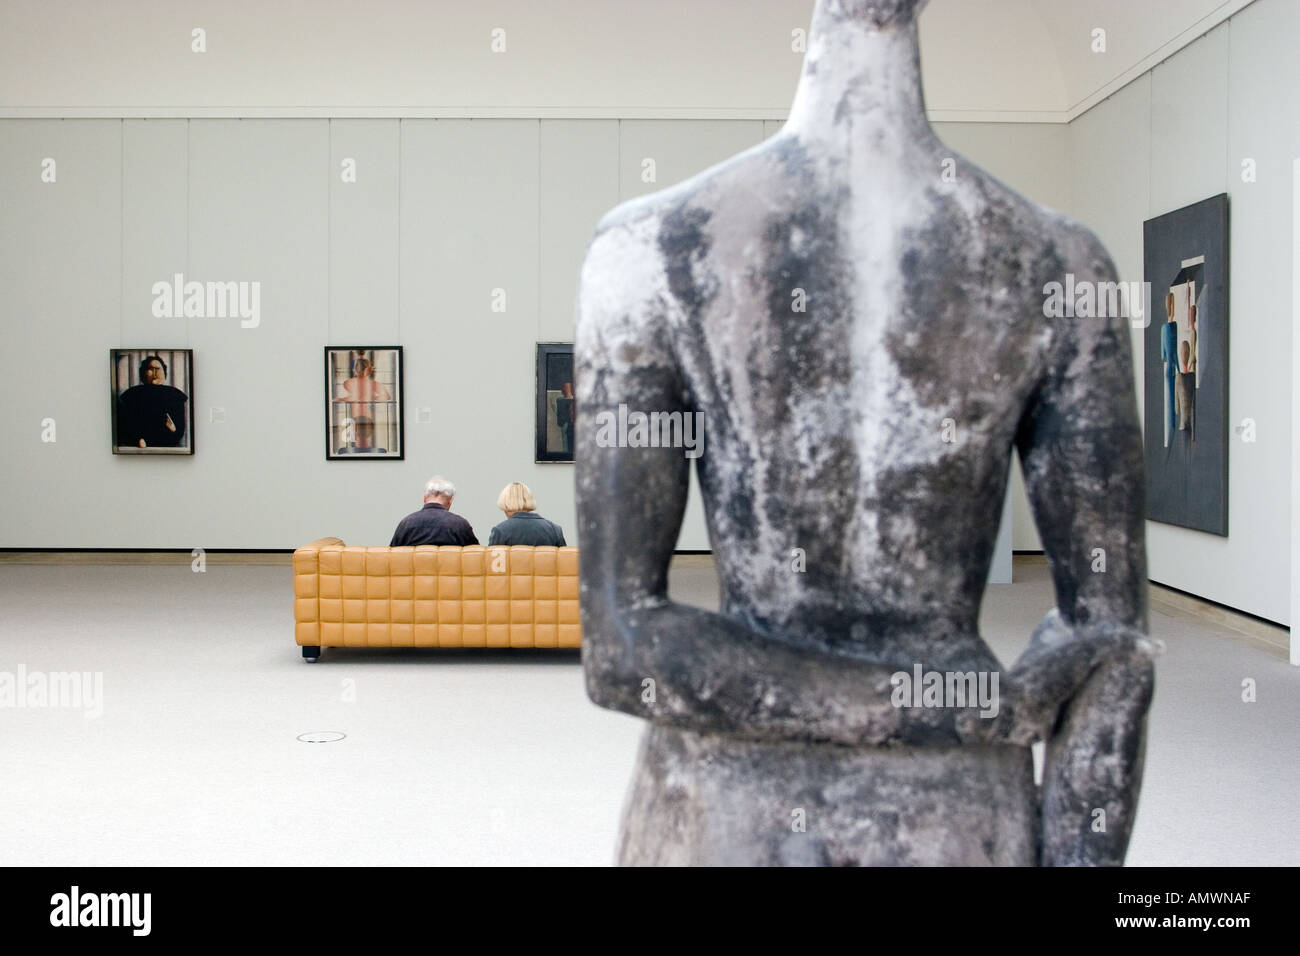 Germania Stoccarda mostra d'Arte presso la Staatsgalerie Staatsgalerie museo progettato dallo scultore e architetto James Stirling Foto Stock